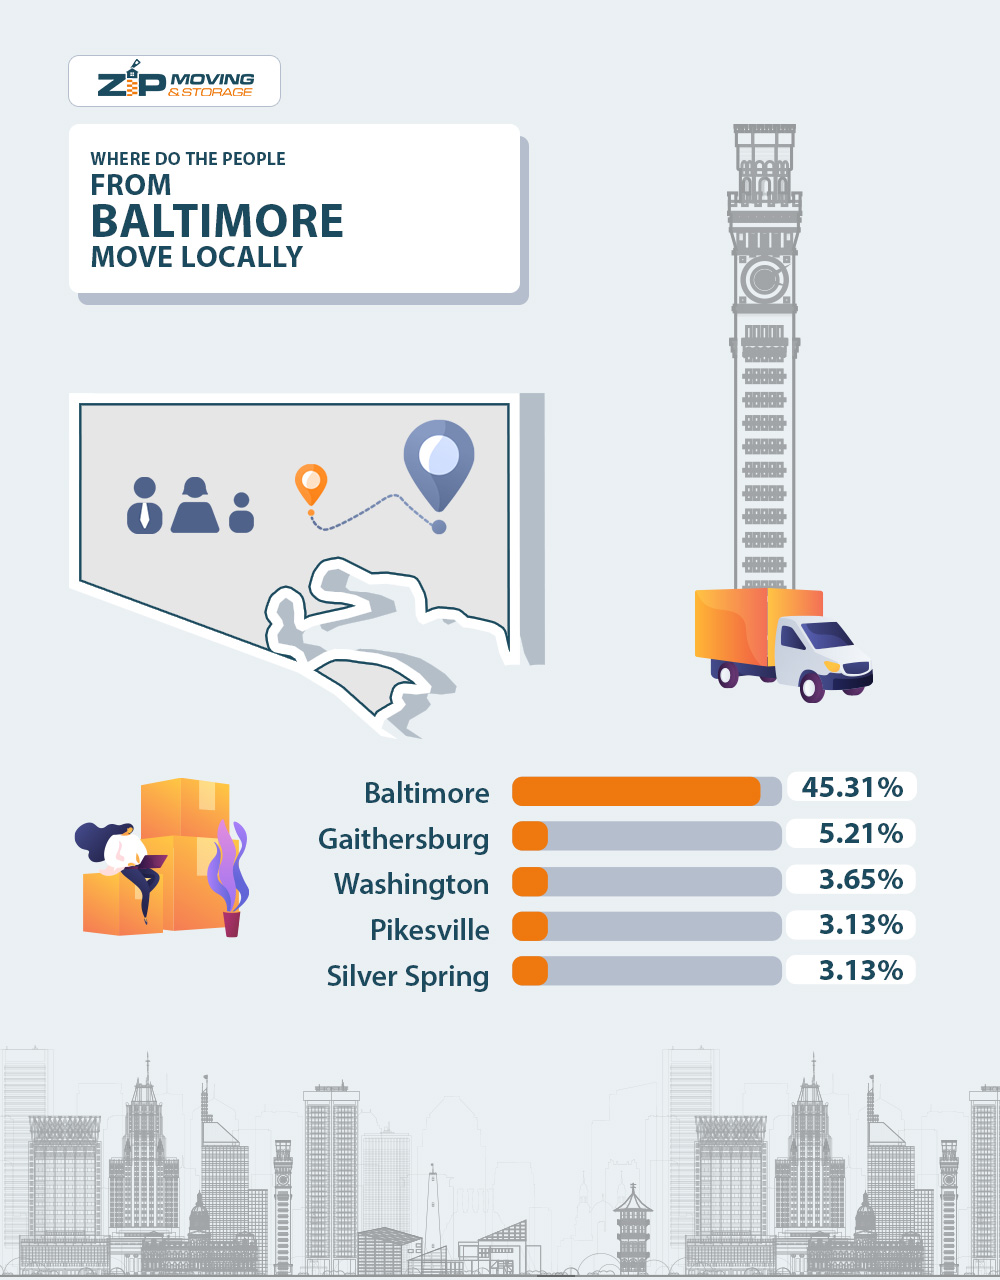 Where do Baltimore residents move locally?